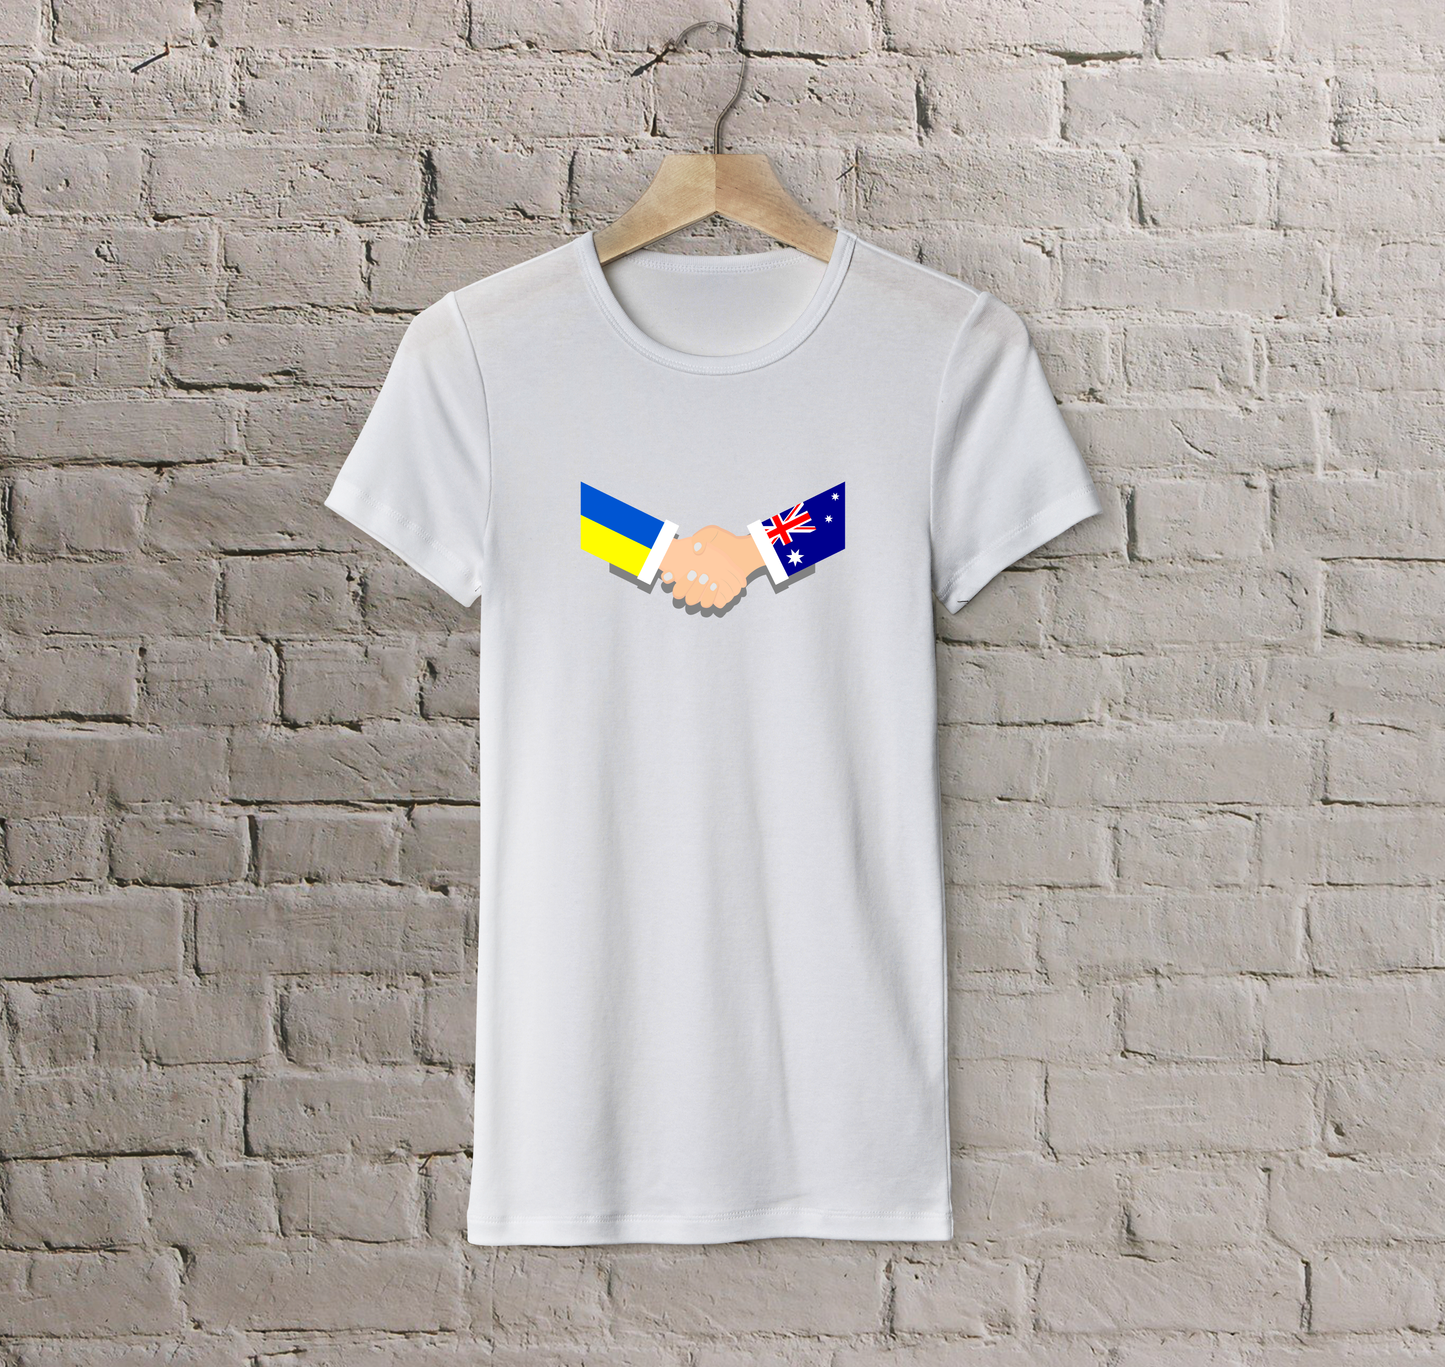 T-shirt Australia + Ukraine (handshake)